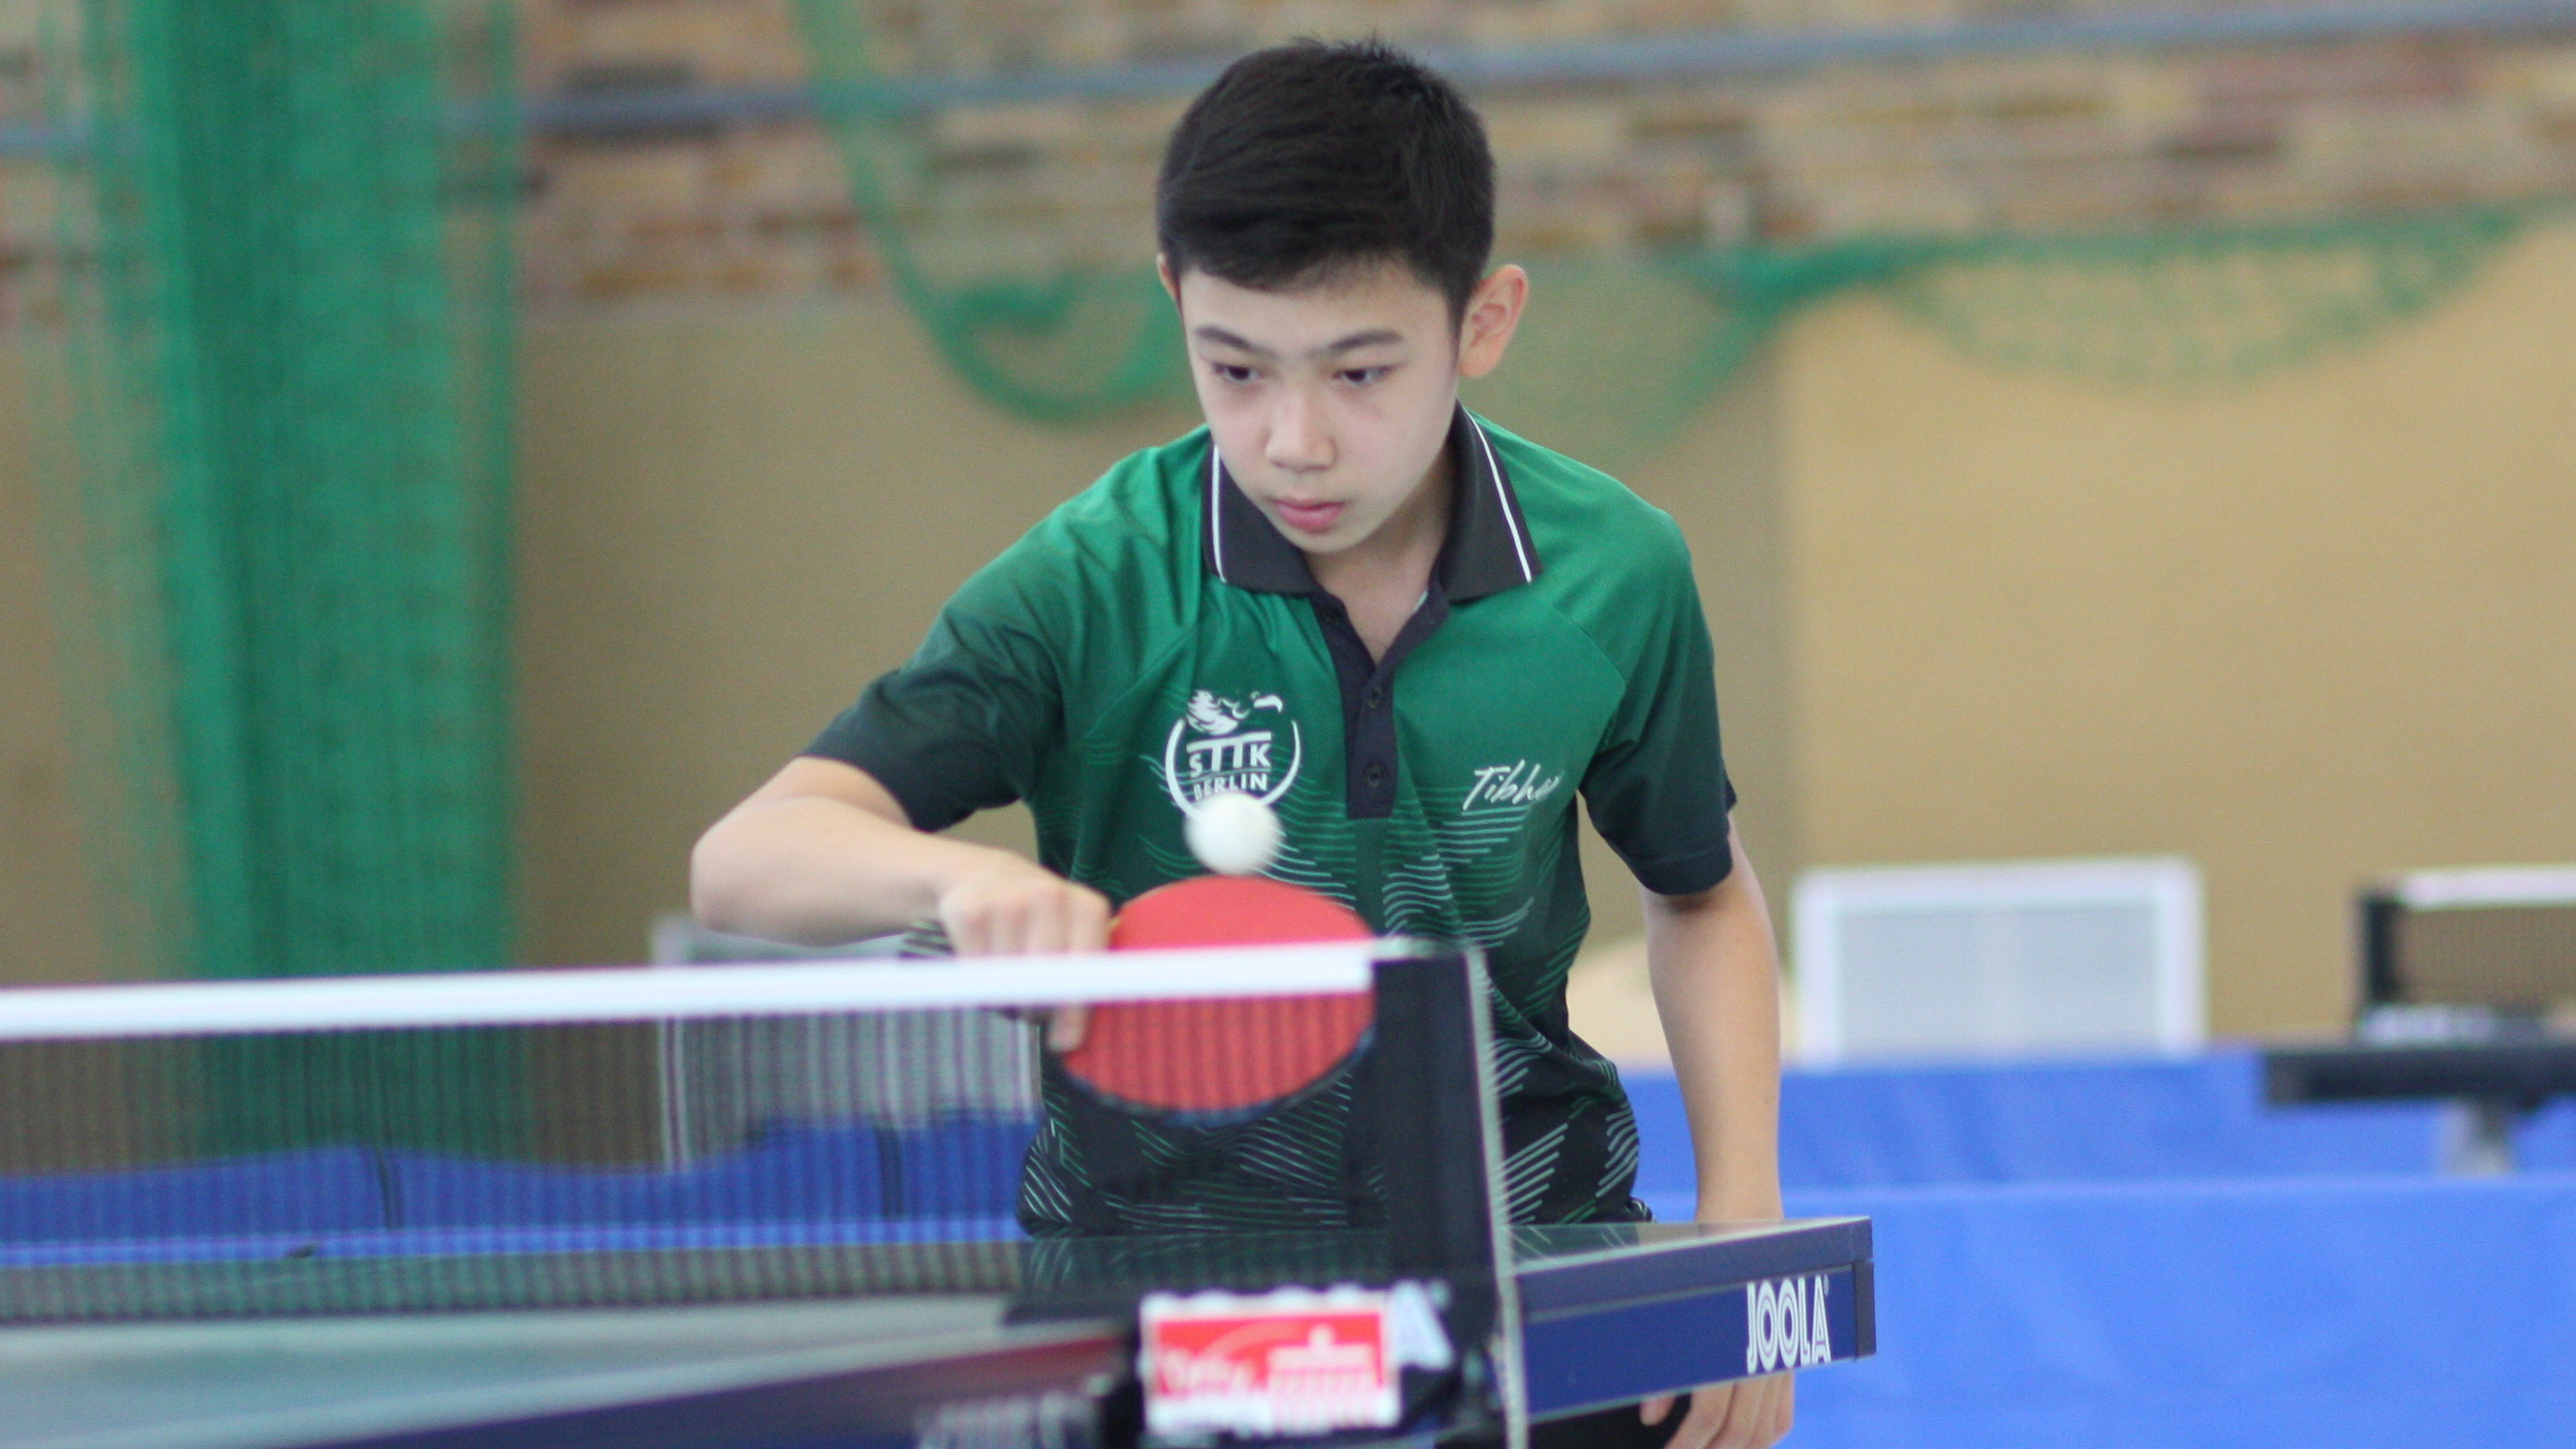 Jiayu, 4. Platz bei der Landesrangliste der Jungen 15 2019, Archivbild